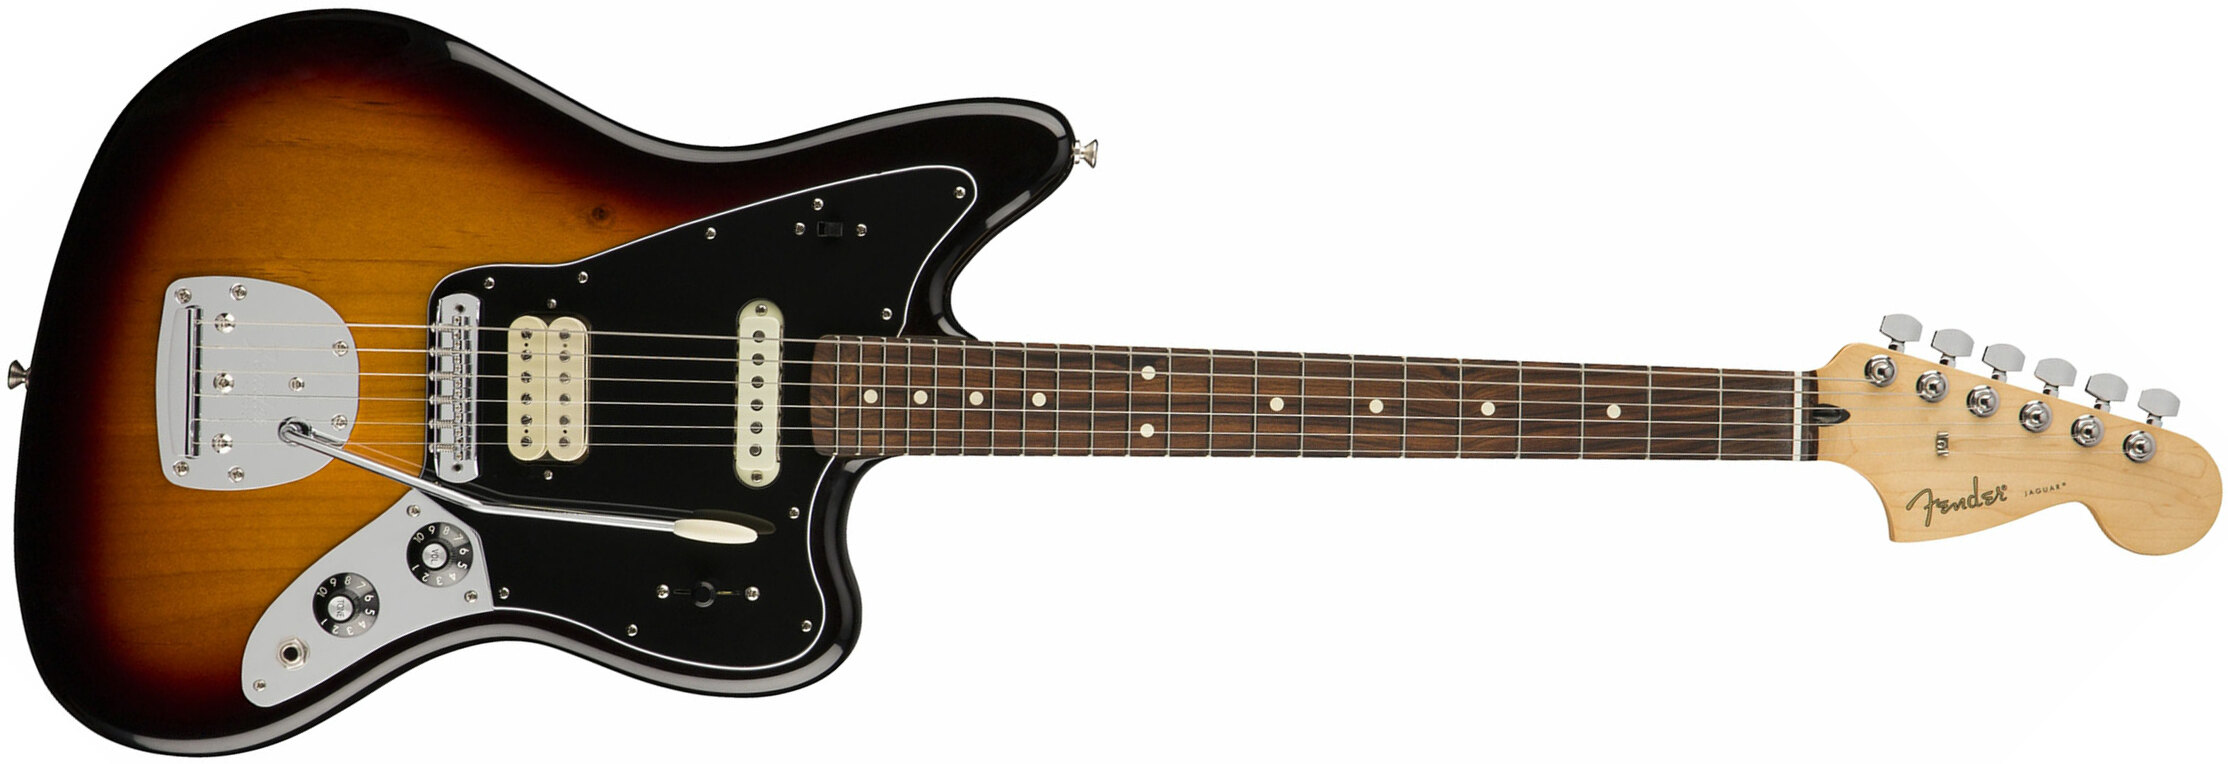 Fender Jaguar Player Mex Hs Pf - 3-color Sunburst - Retro rock electric guitar - Main picture